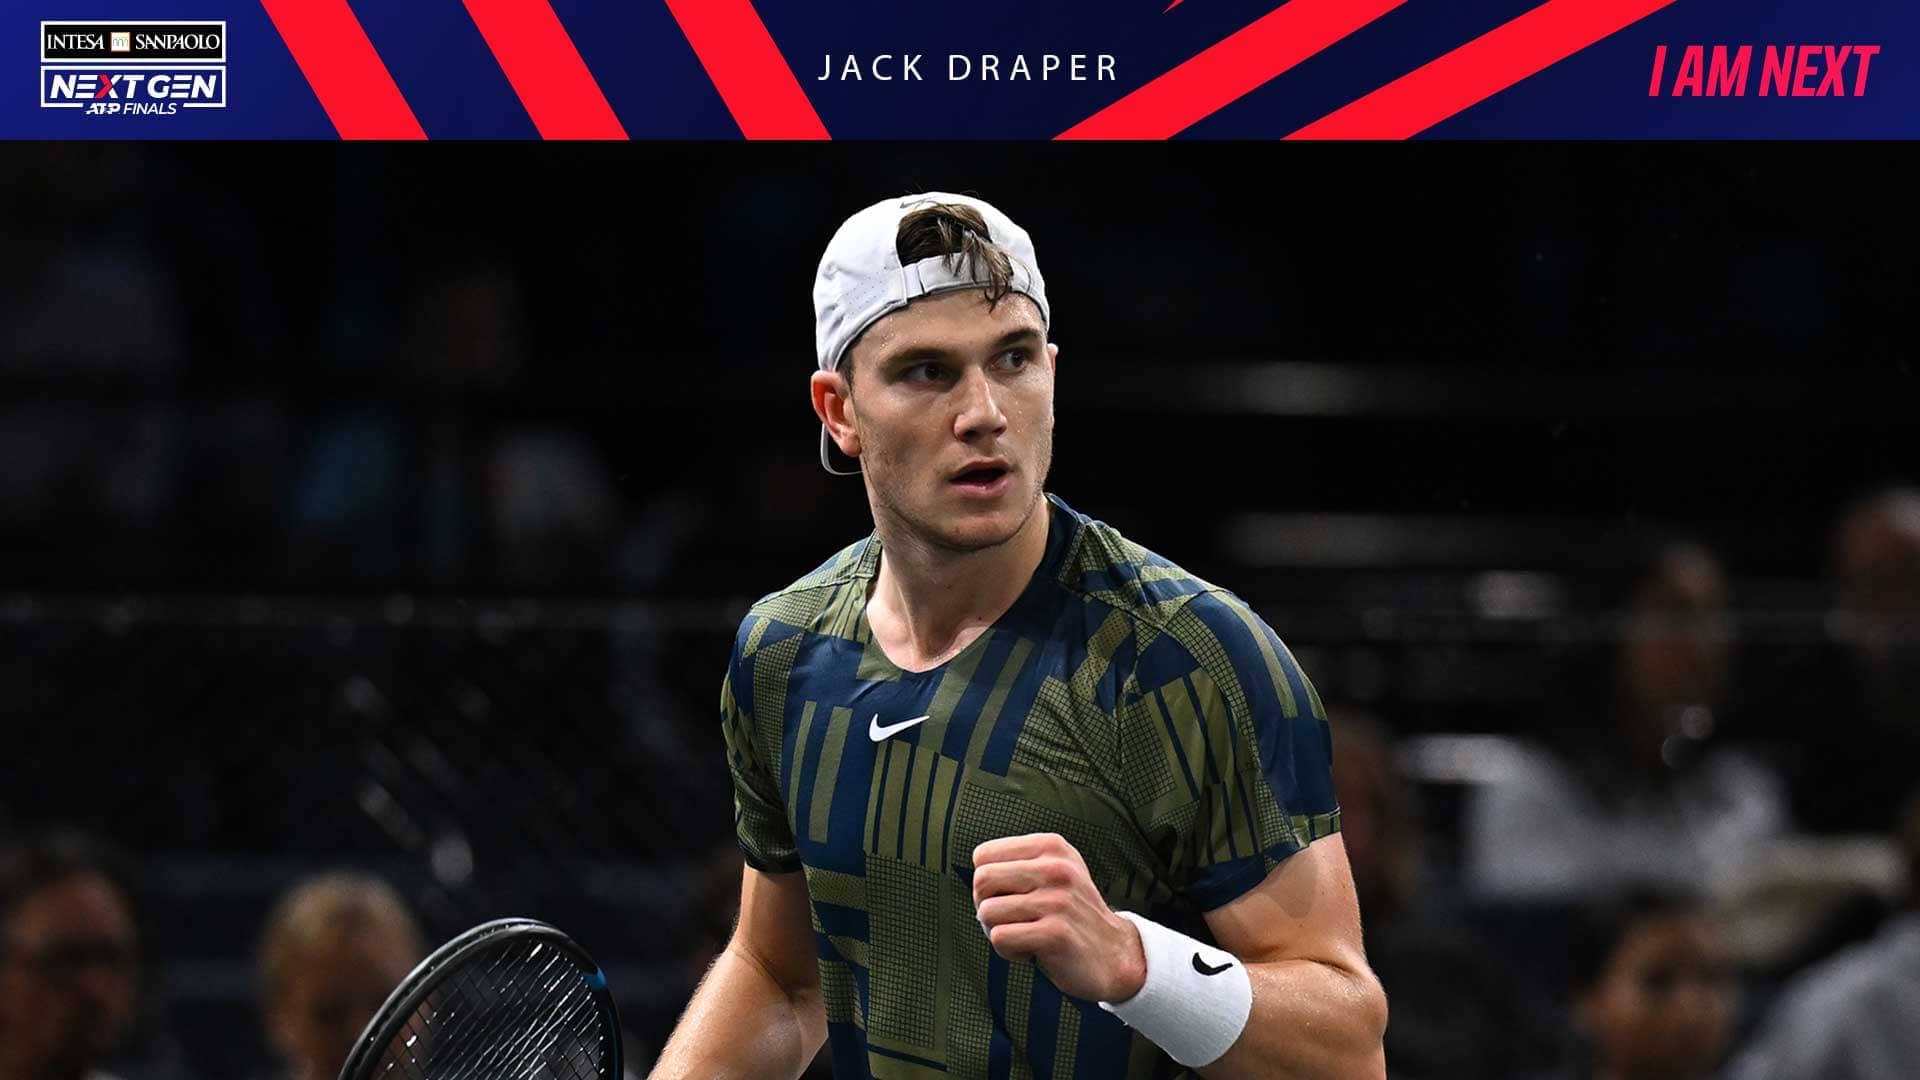 Jack Draper has won four ATP Challenger Tour titles this season.